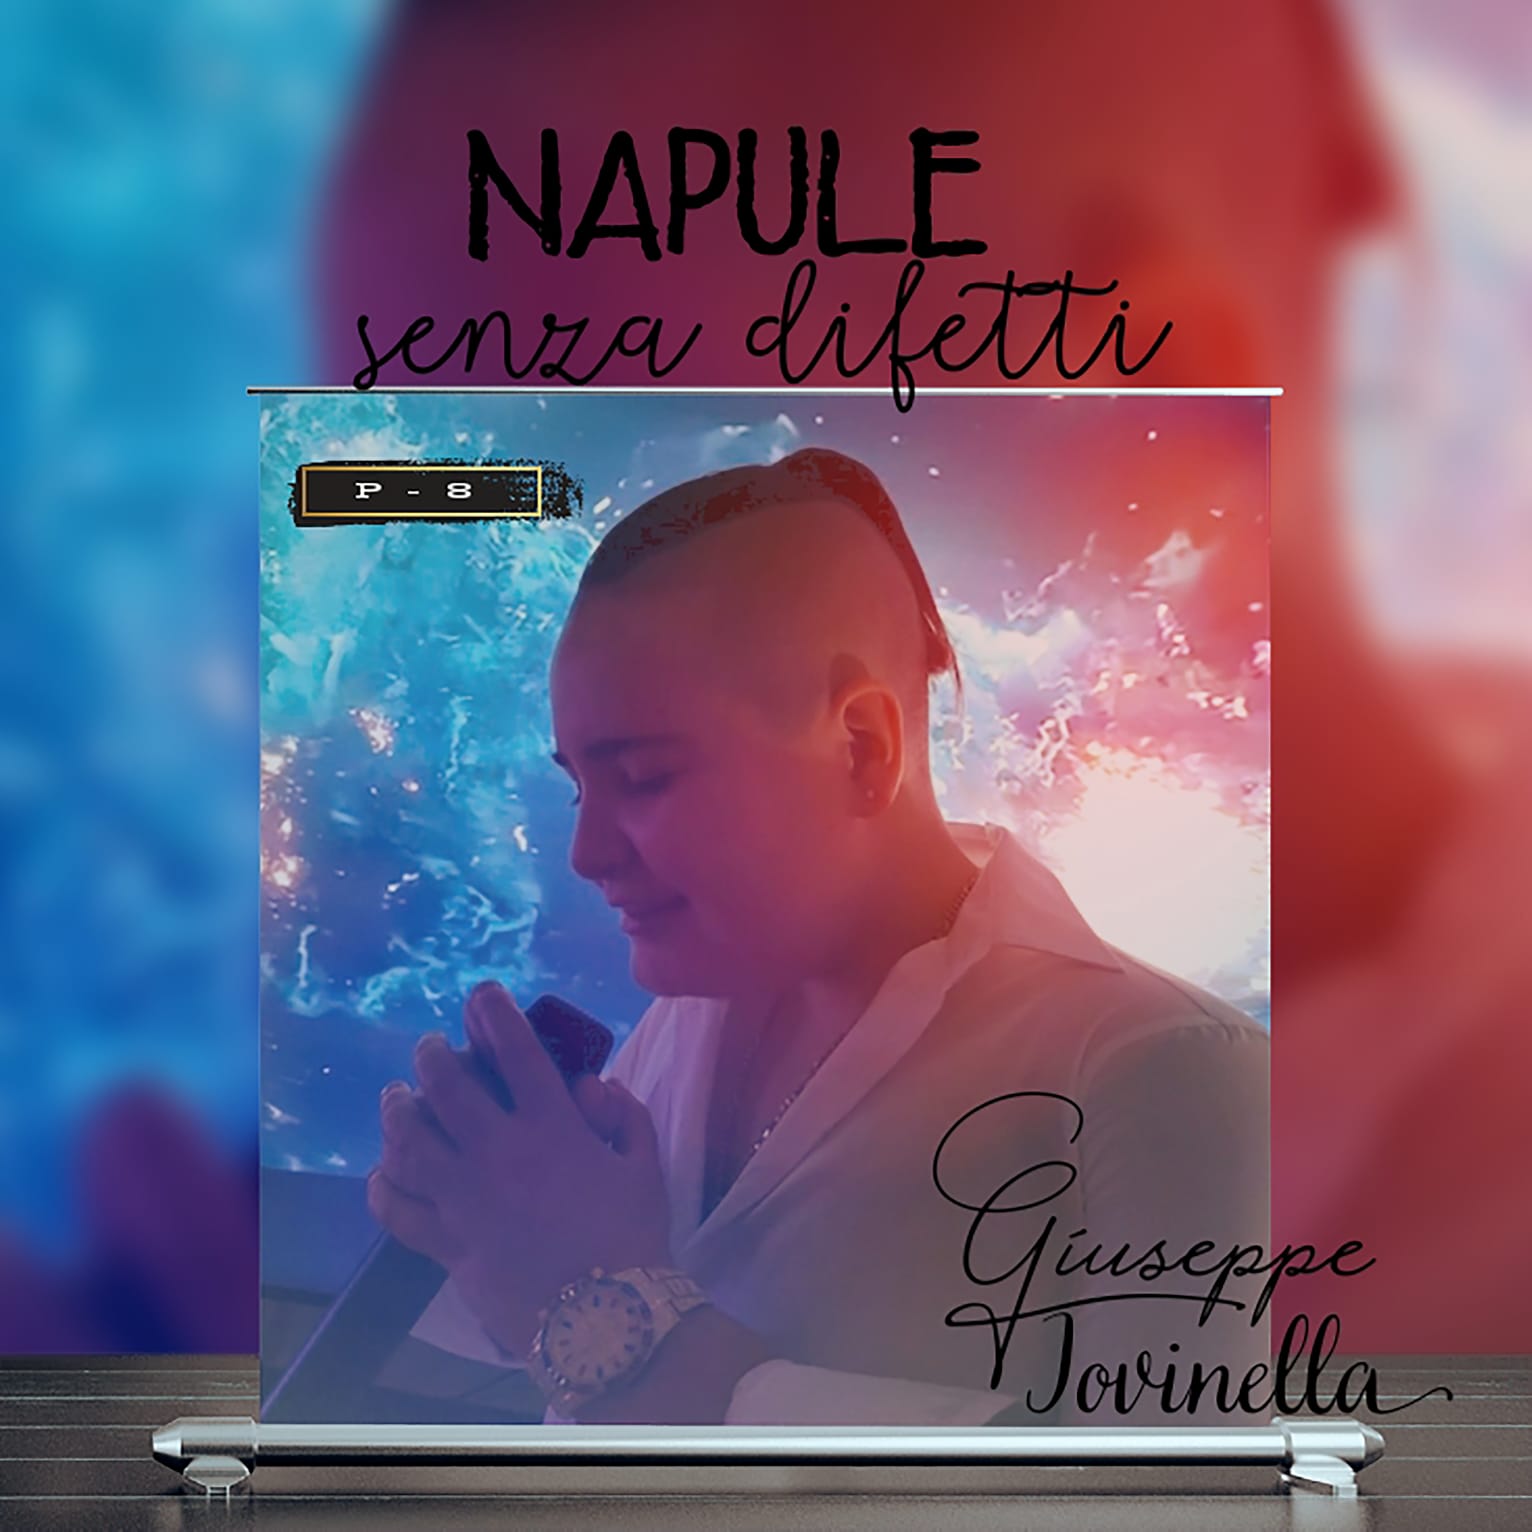 E’ online “Napule senza difetti”, il primo singolo ufficiale di Giuseppe Iovinella in arte P-8